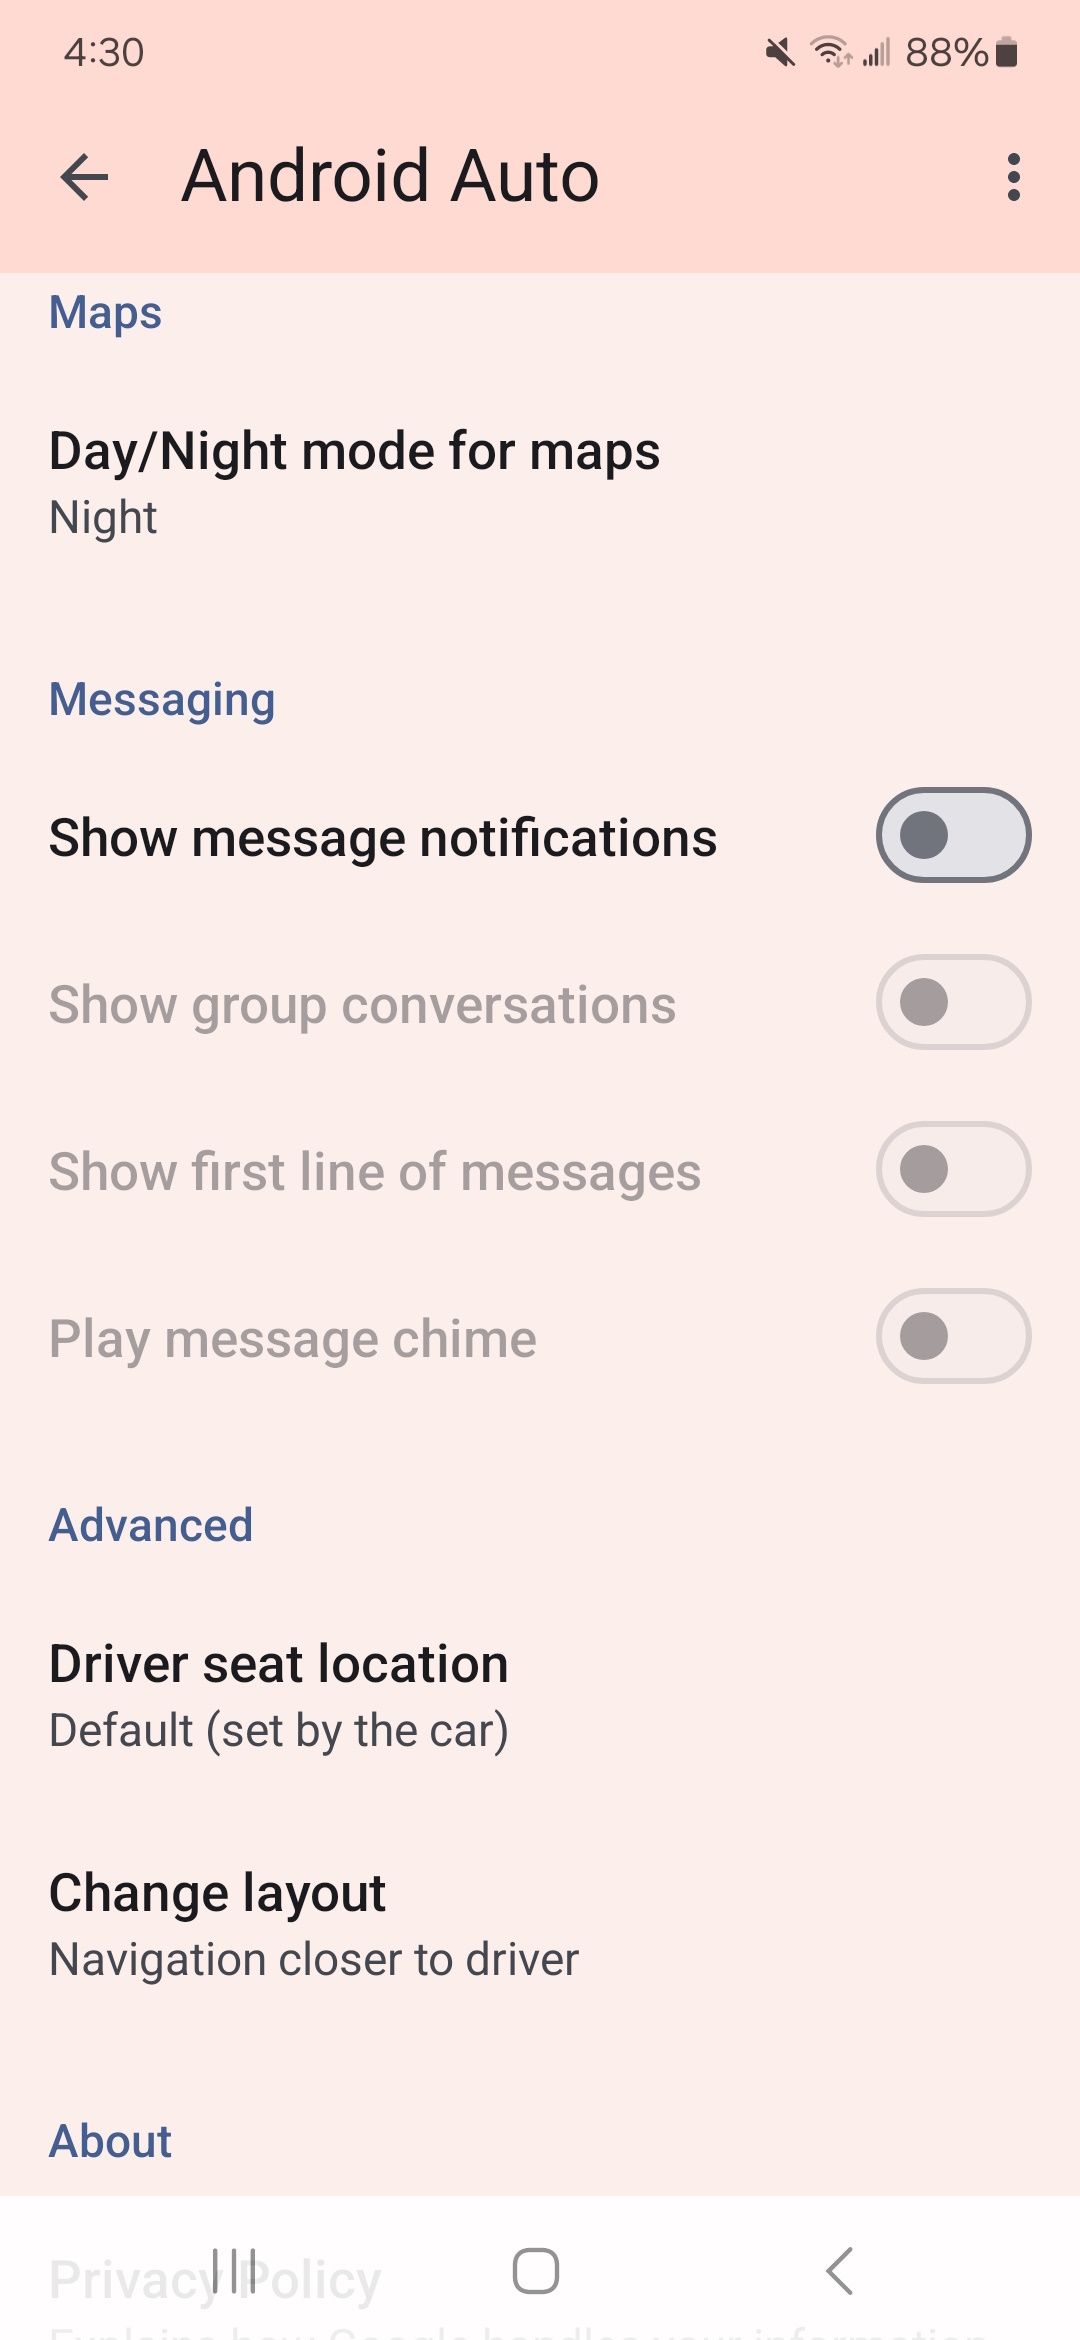 os alternadores de notificações de mensagens estão desativados no aplicativo Android Auto